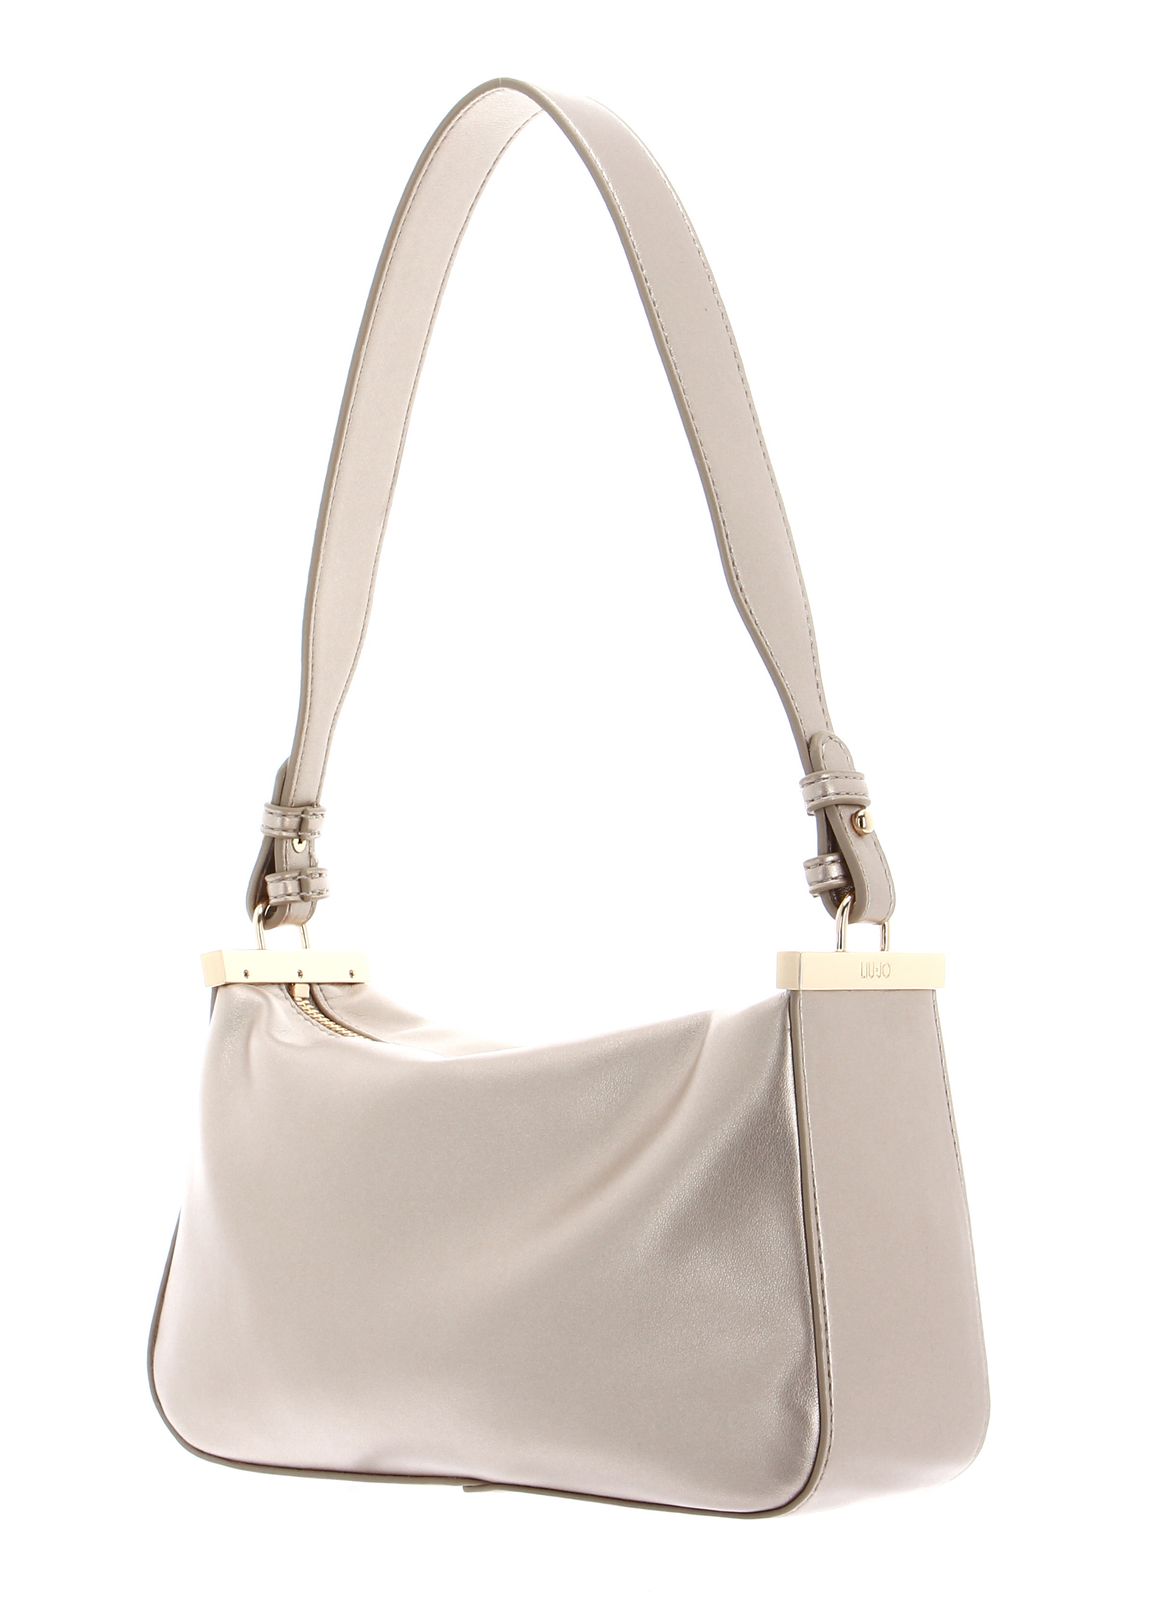 LIU JO Mariko ECS Hobo Bag S Light Gold | Buy bags, purses ...